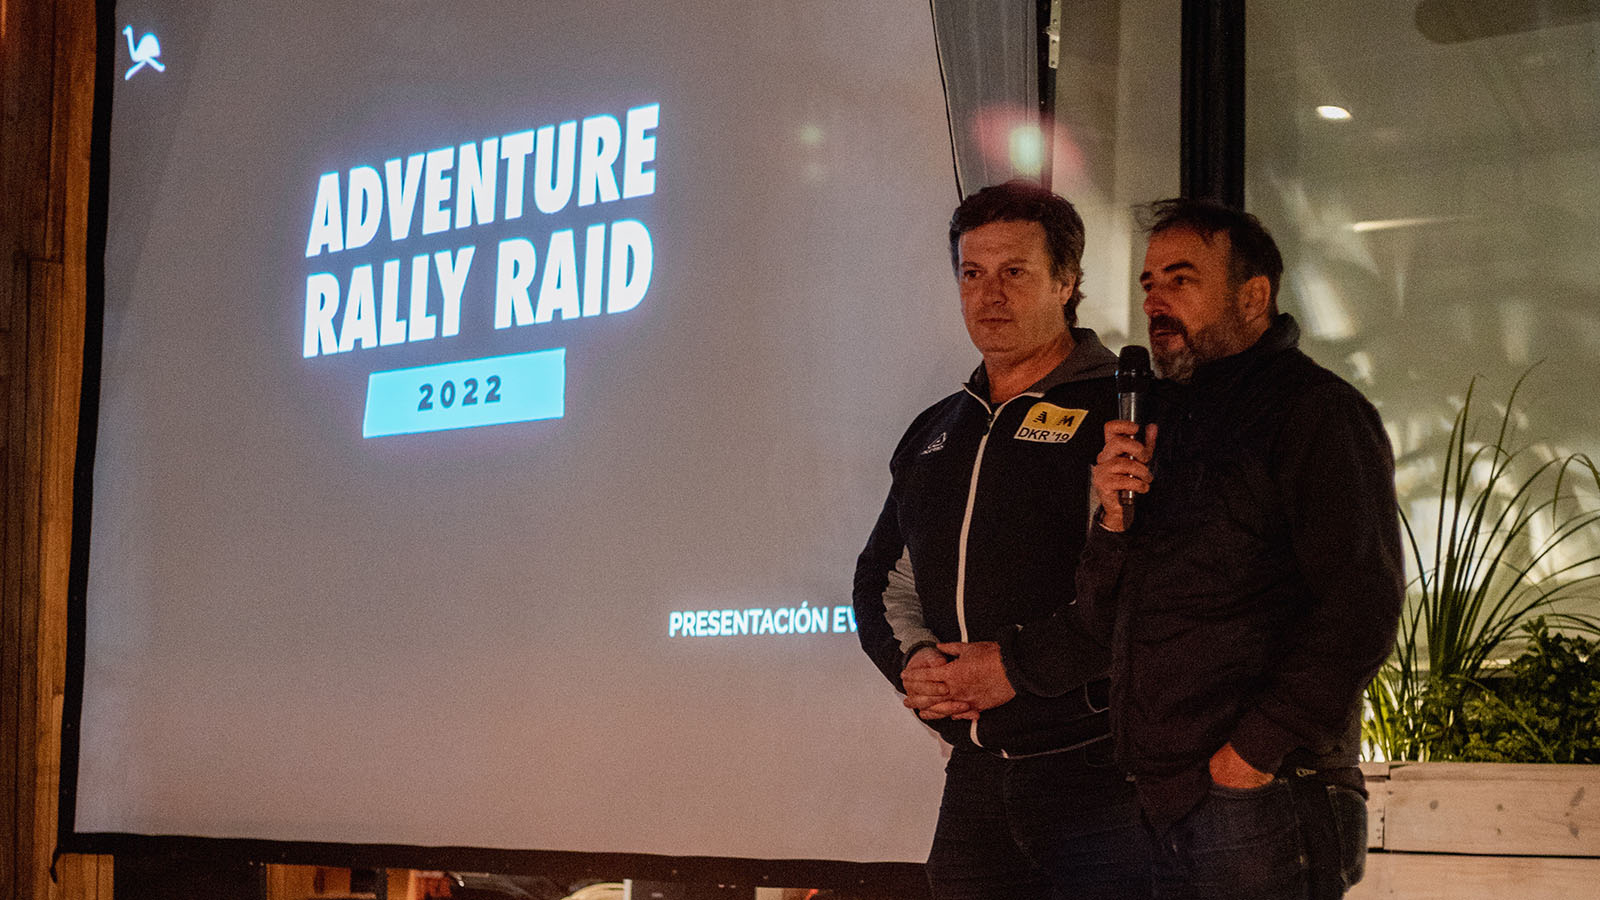 Se presentó la 3ra edición del Adventure Rally Raid “Patagonia”